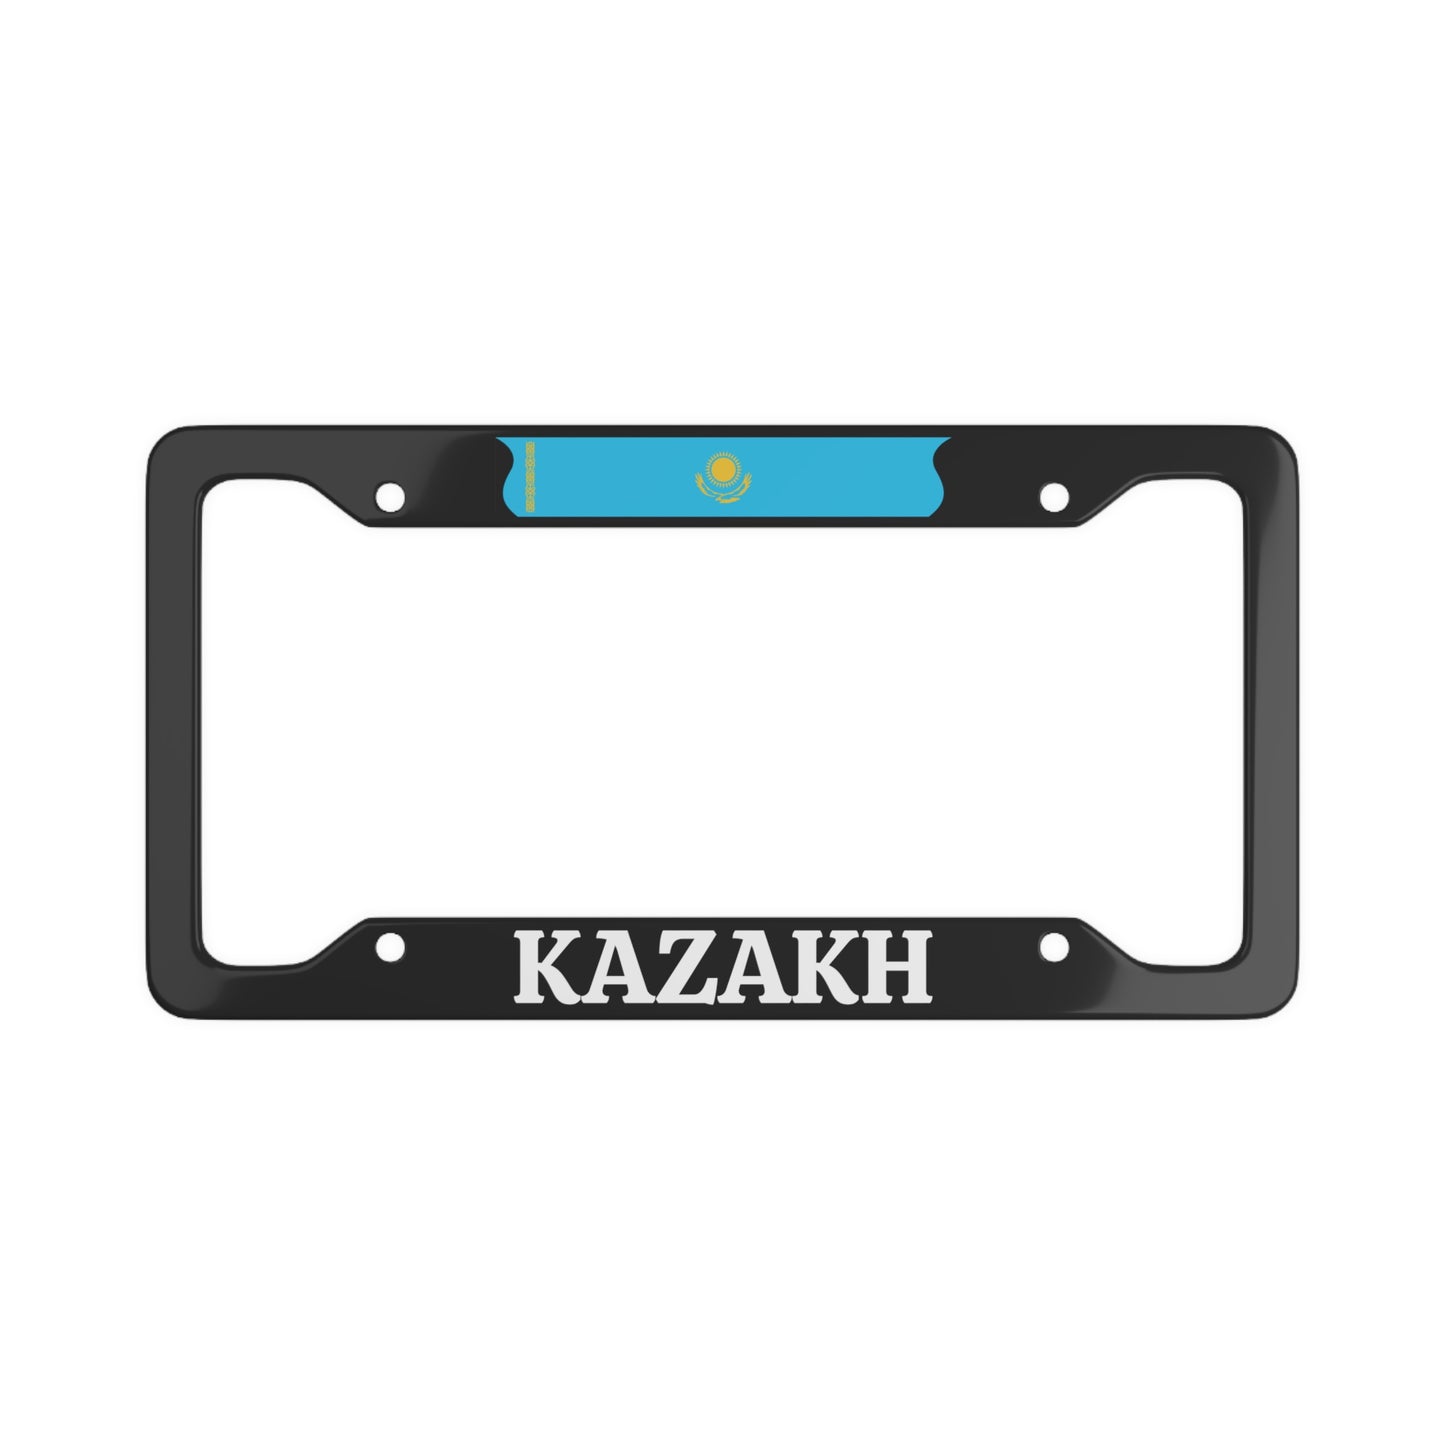 KAZAKH License Plate Frame